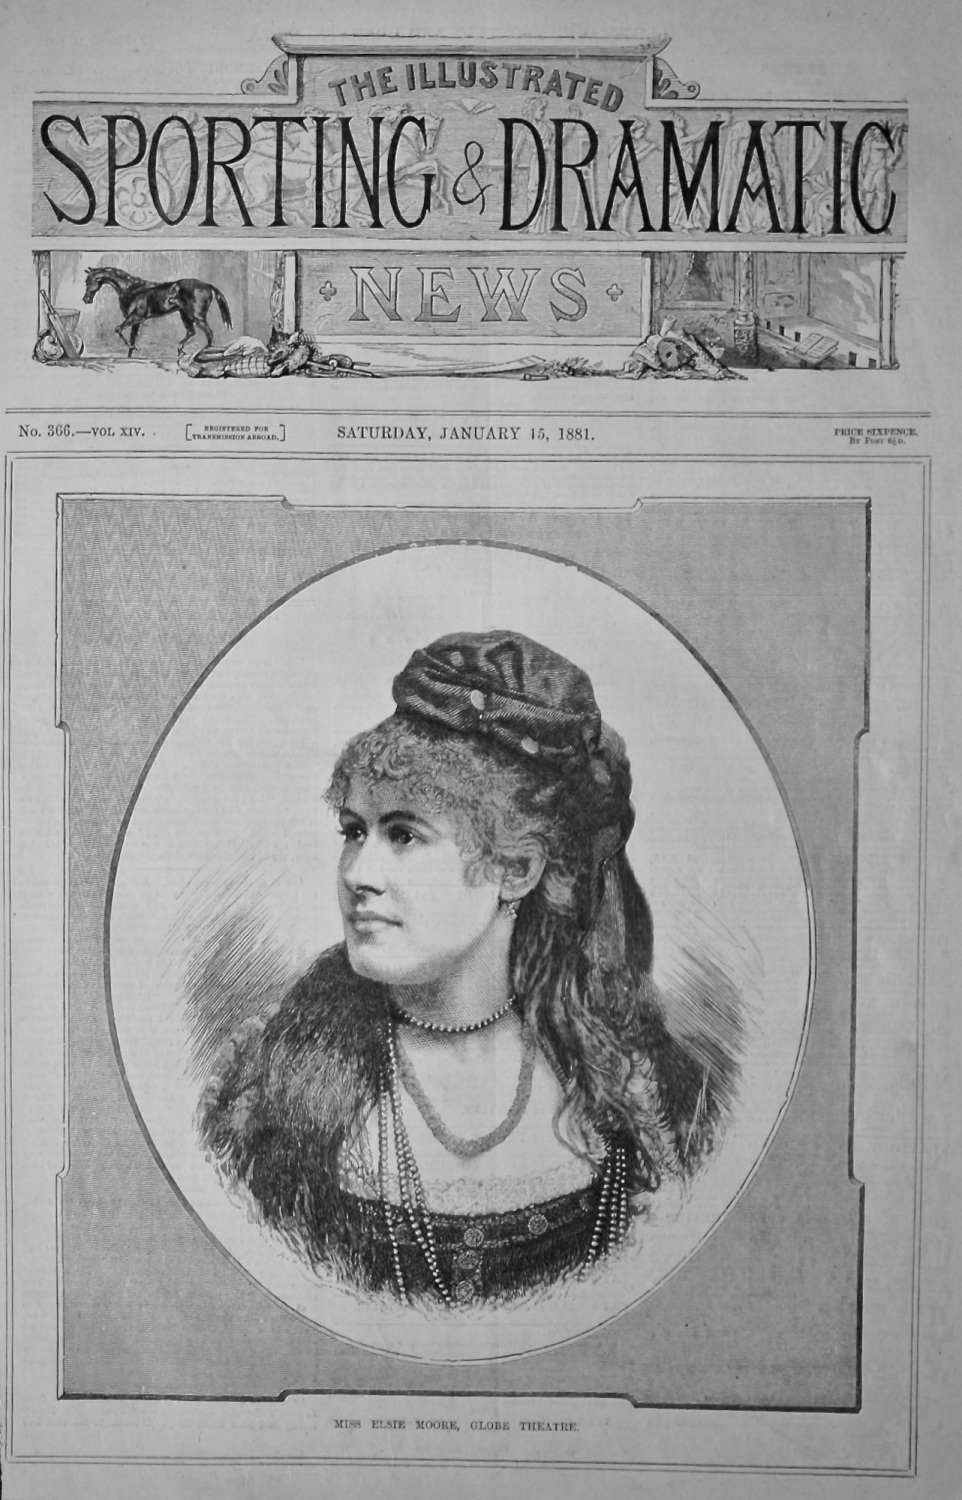 Miss Elsie Moore, Globe Theatre.  1881.